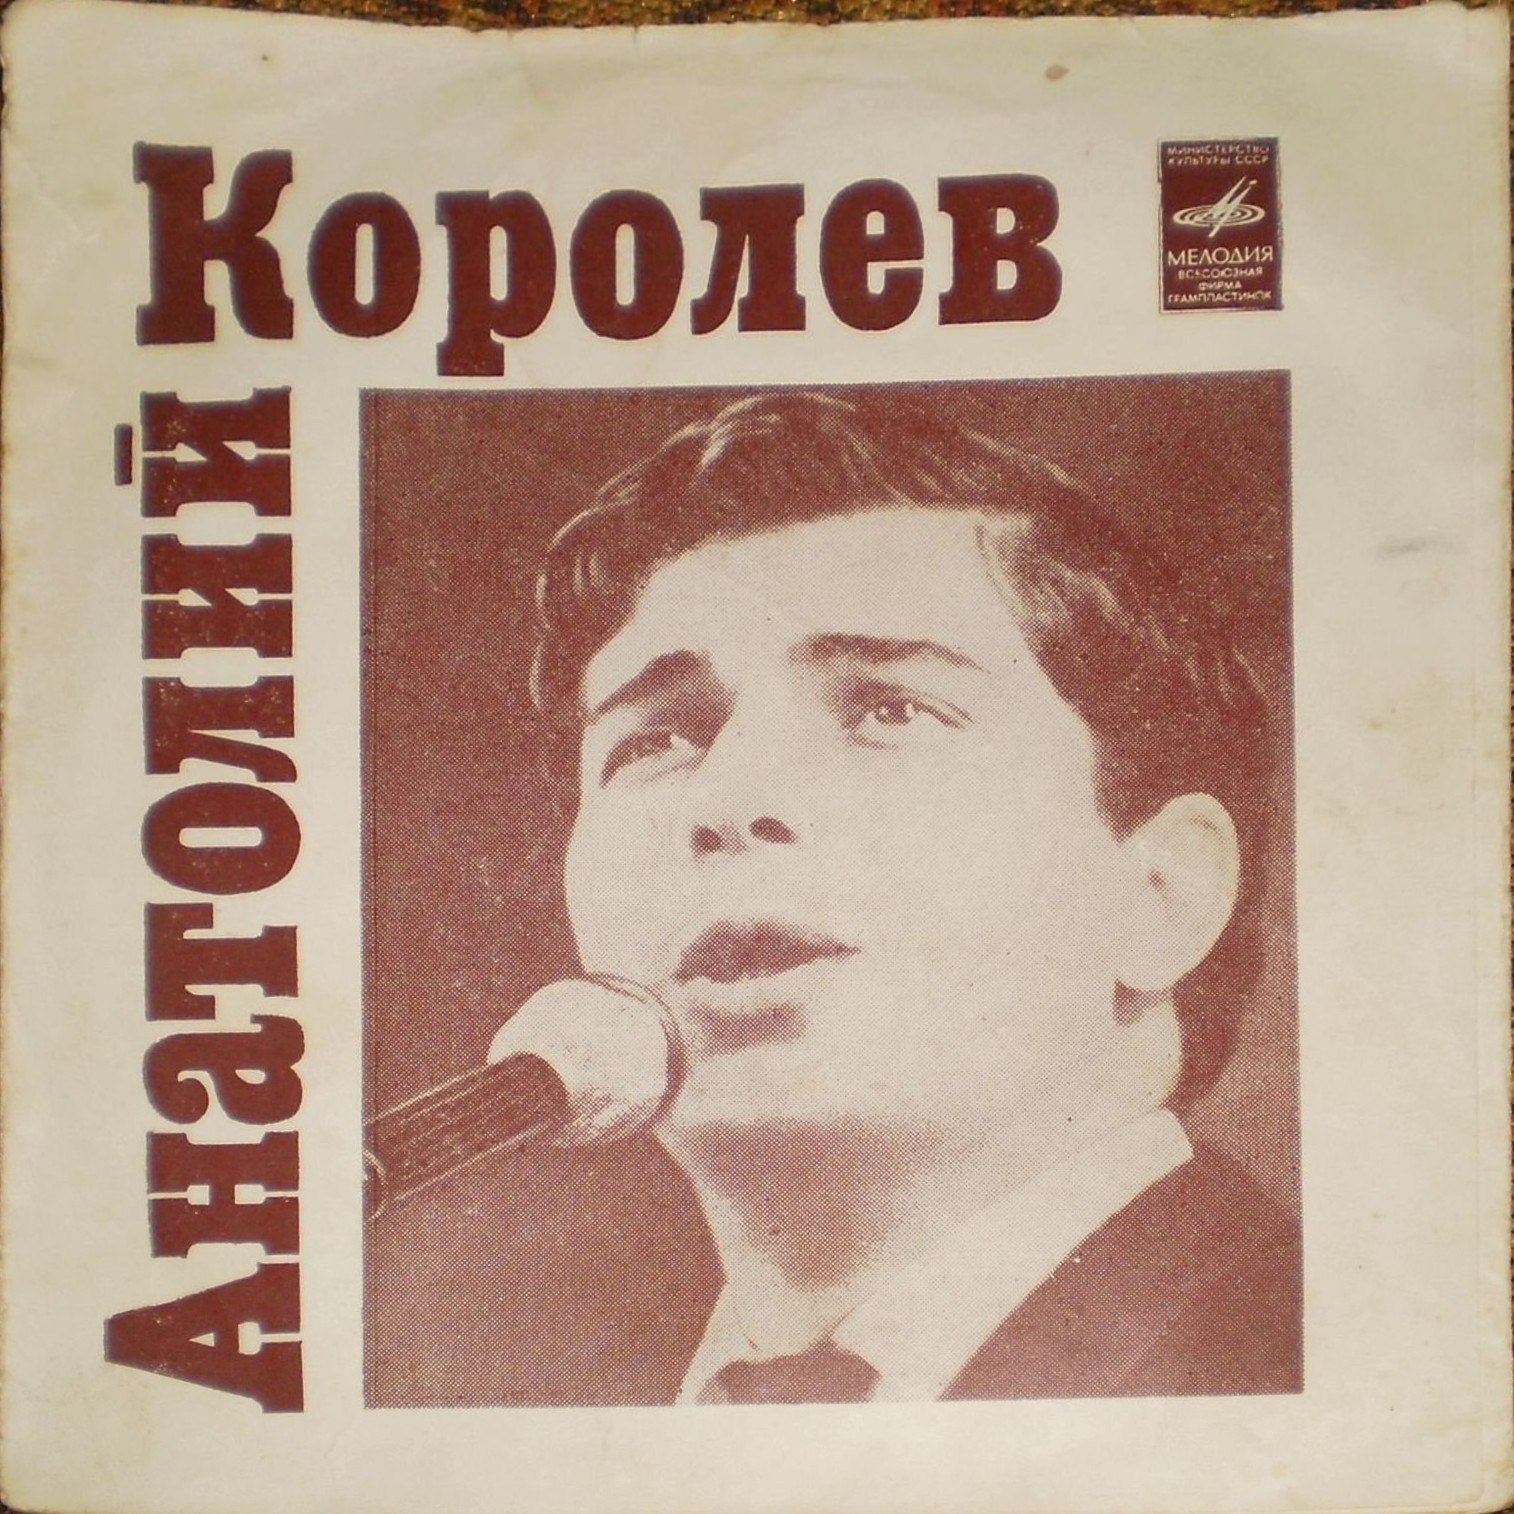 Поёт Анатолий Королёв